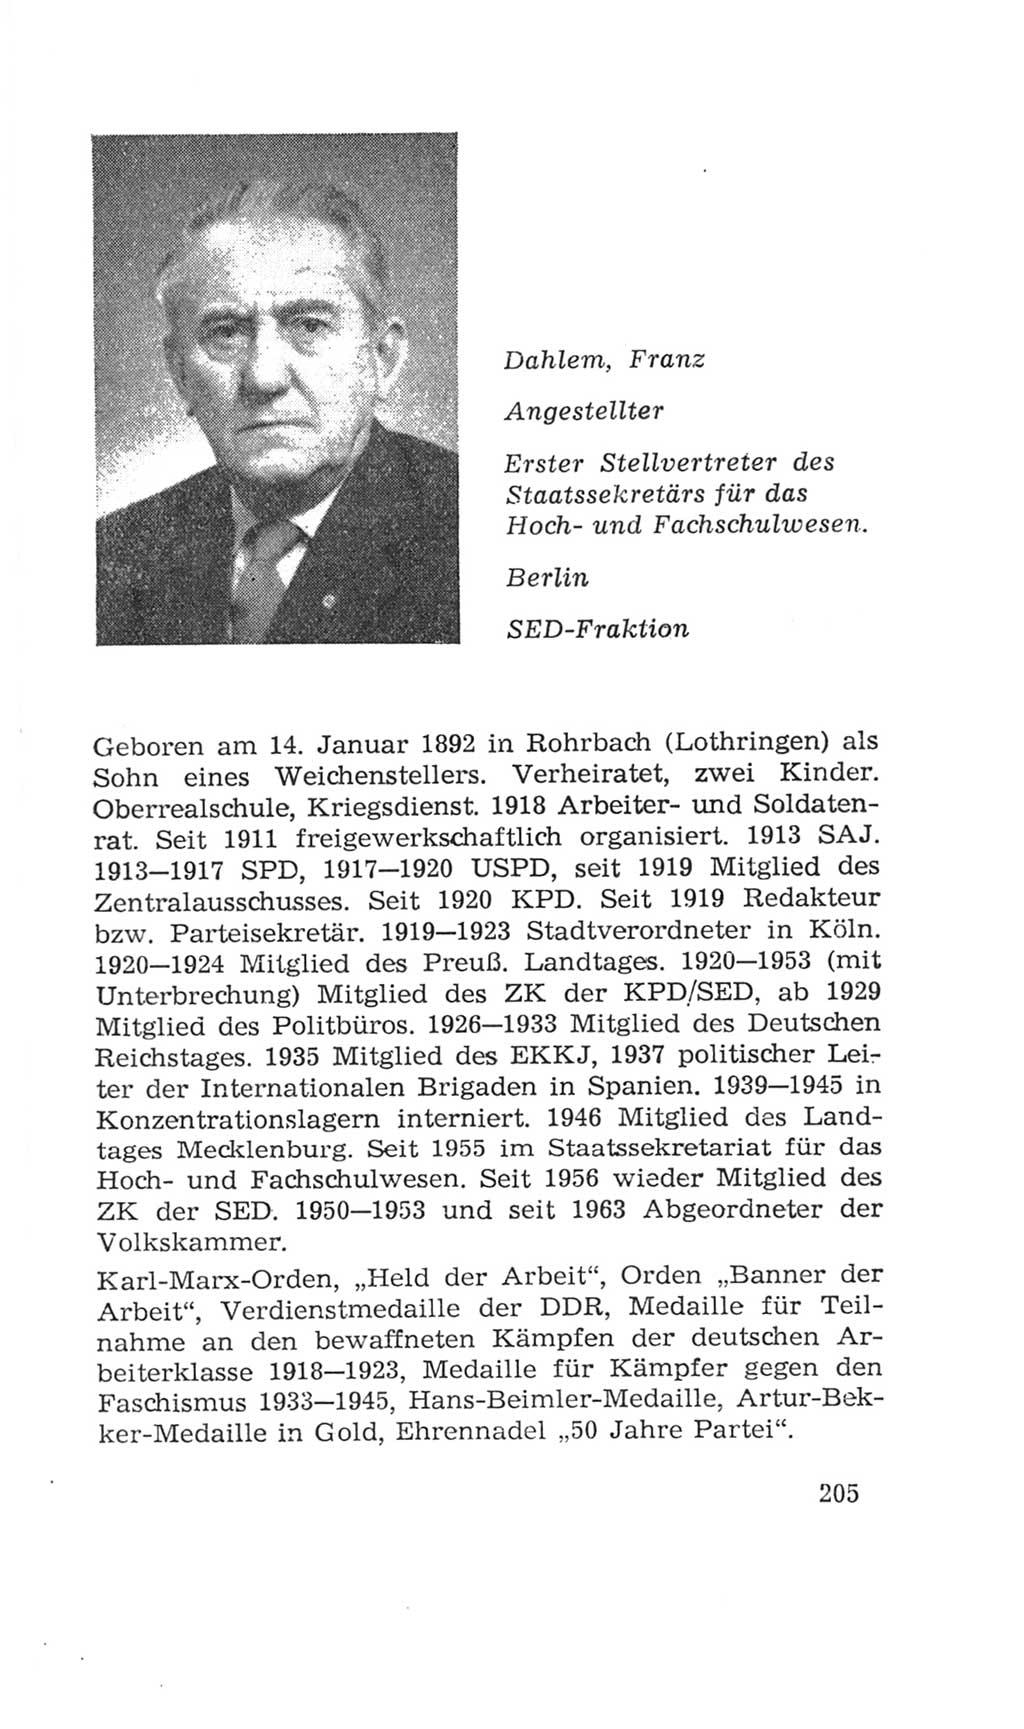 Volkskammer (VK) der Deutschen Demokratischen Republik (DDR), 4. Wahlperiode 1963-1967, Seite 205 (VK. DDR 4. WP. 1963-1967, S. 205)